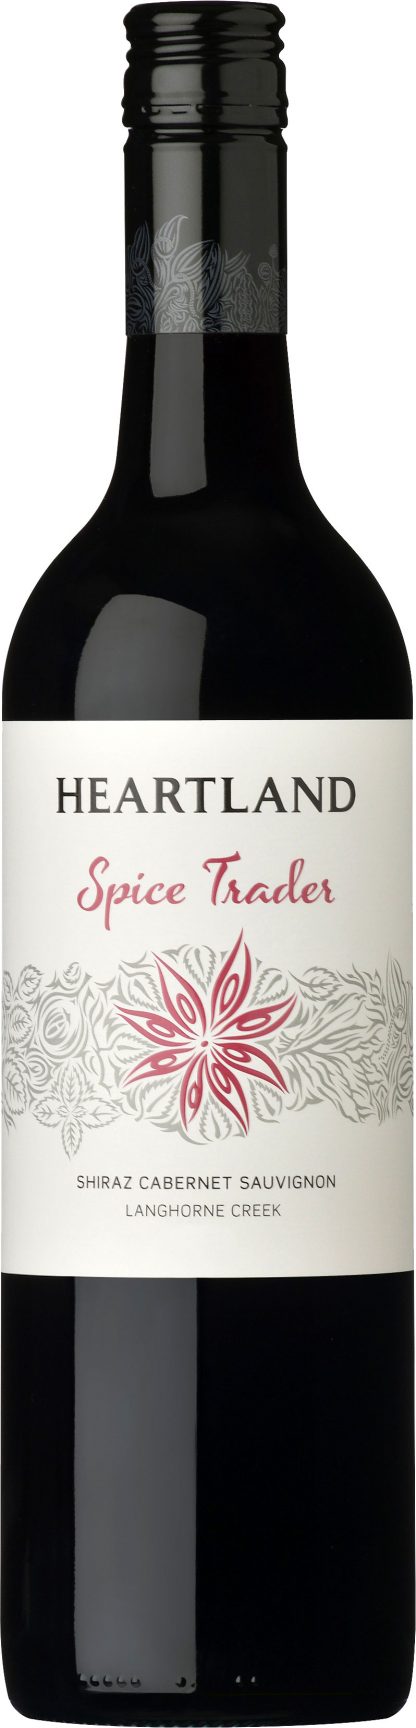 Heartland - Spice Trader Shiraz 2016 75cl Bottle